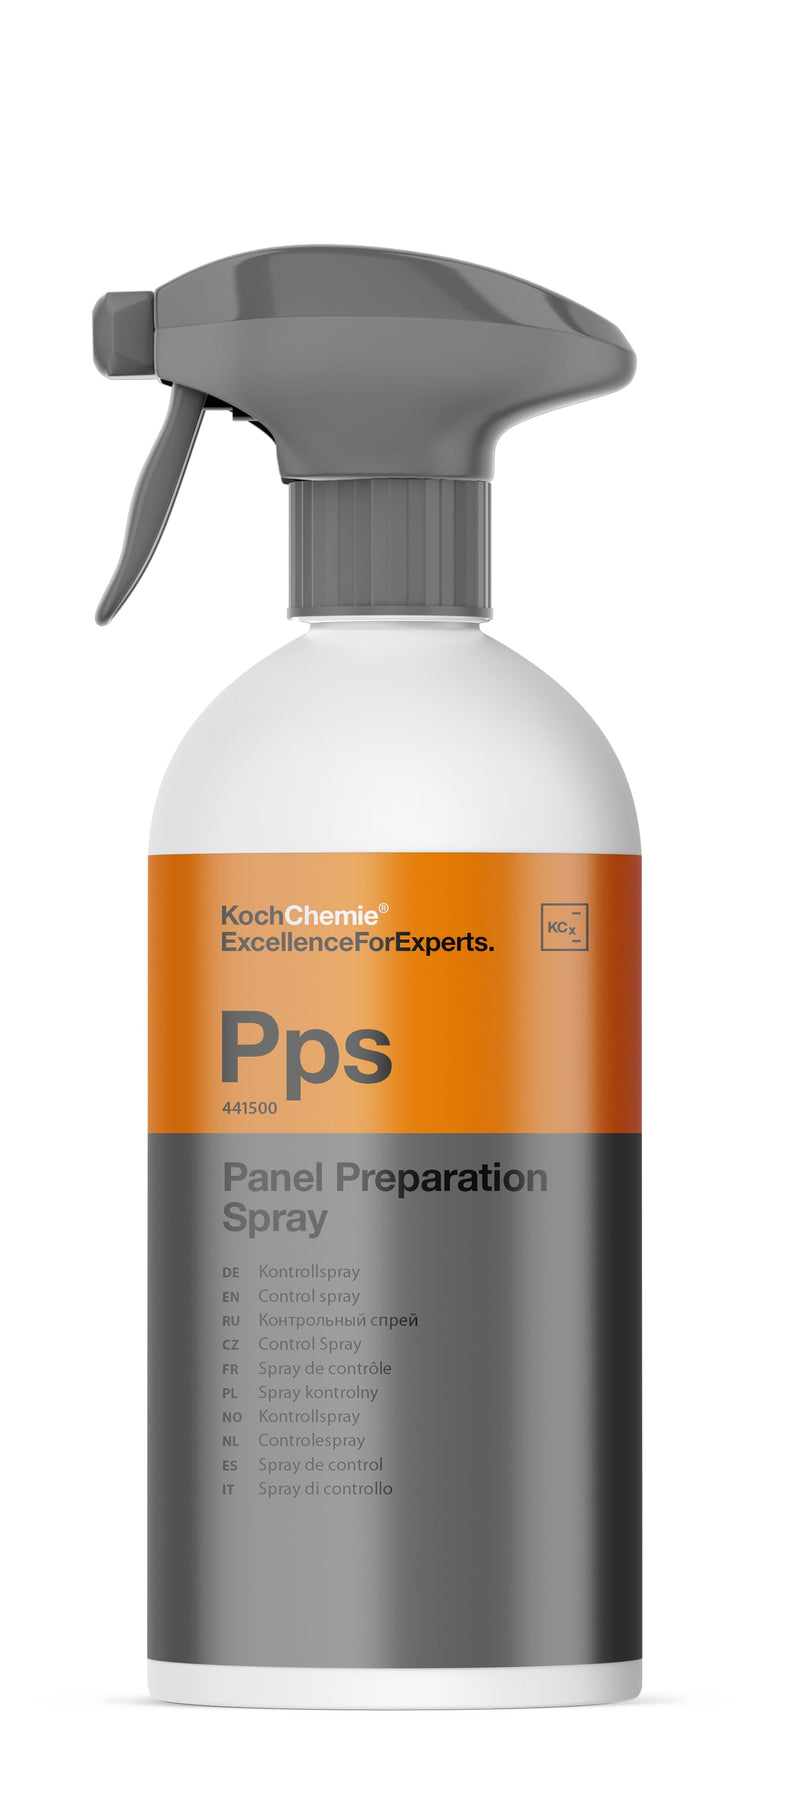 Koch Chemie Pps Panelforberedelse Spray Kontrollspray IPA